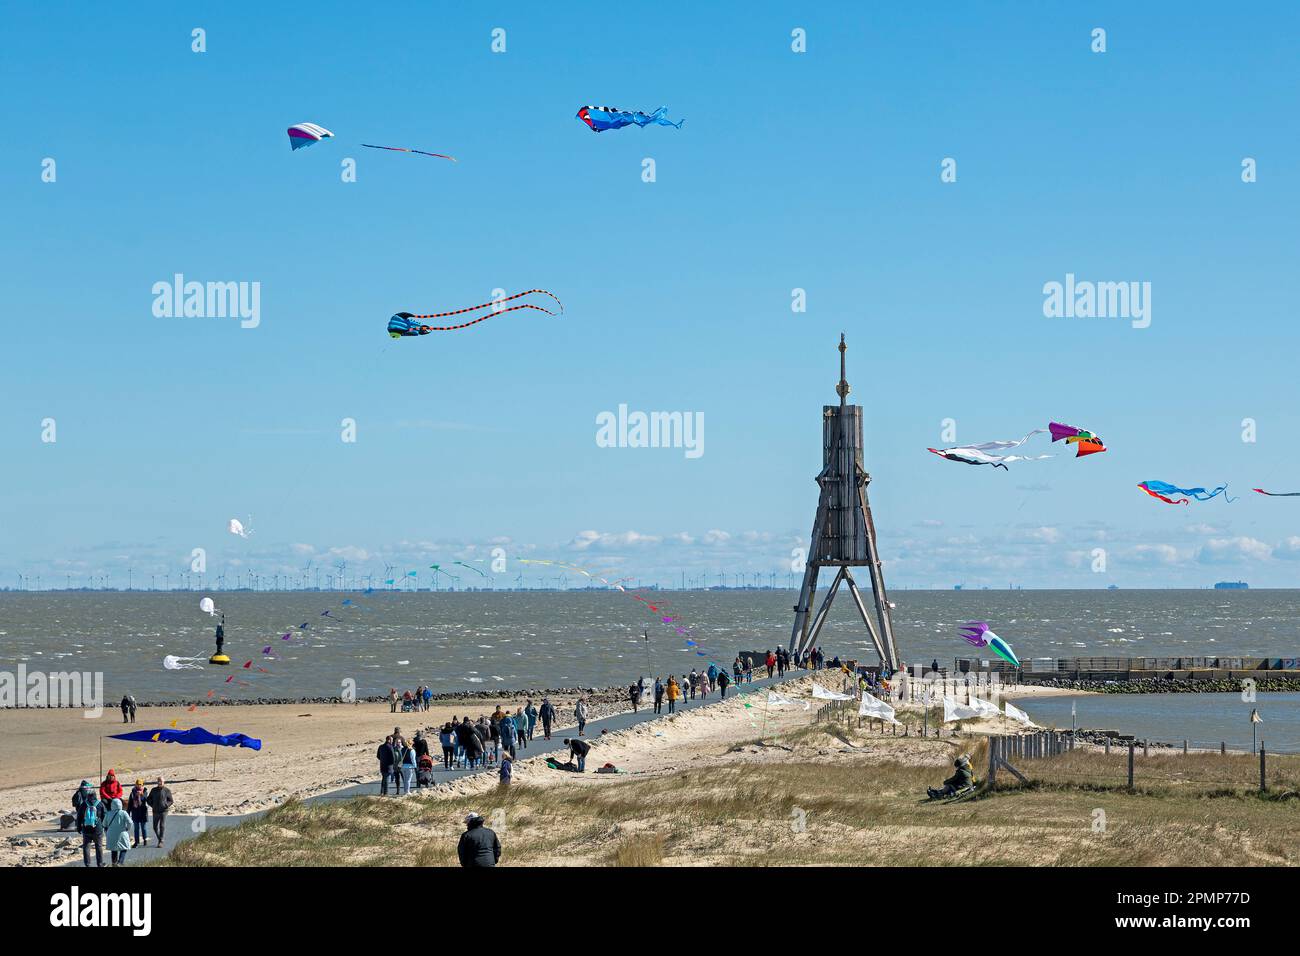 Menschen, fliegende Drachen, Seezeichen Kugelbake, Nordsee, Elbe, Cuxhaven, Niedersachsen, Deutschland Stockfoto